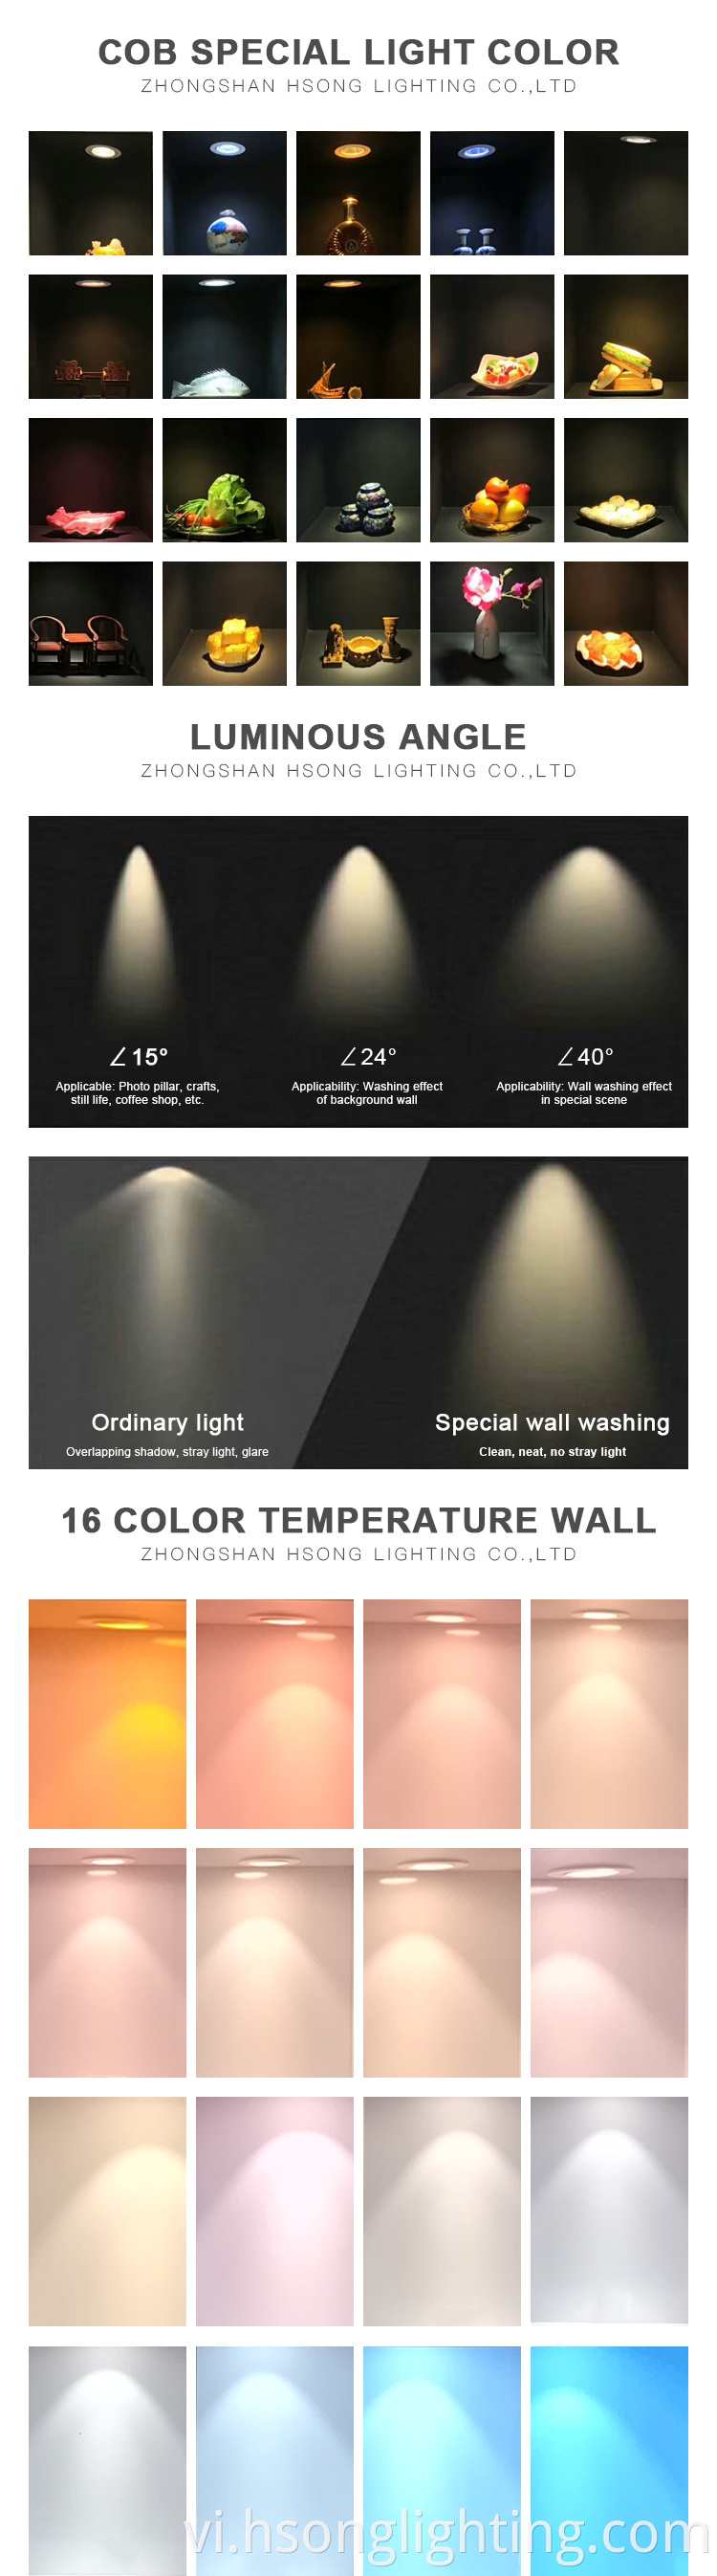 Chất lượng cao 7W 10W 15W 30W nhôm trắng Cob trong nhà lõm đèn LED đèn chiếu sáng đèn LED LED LED